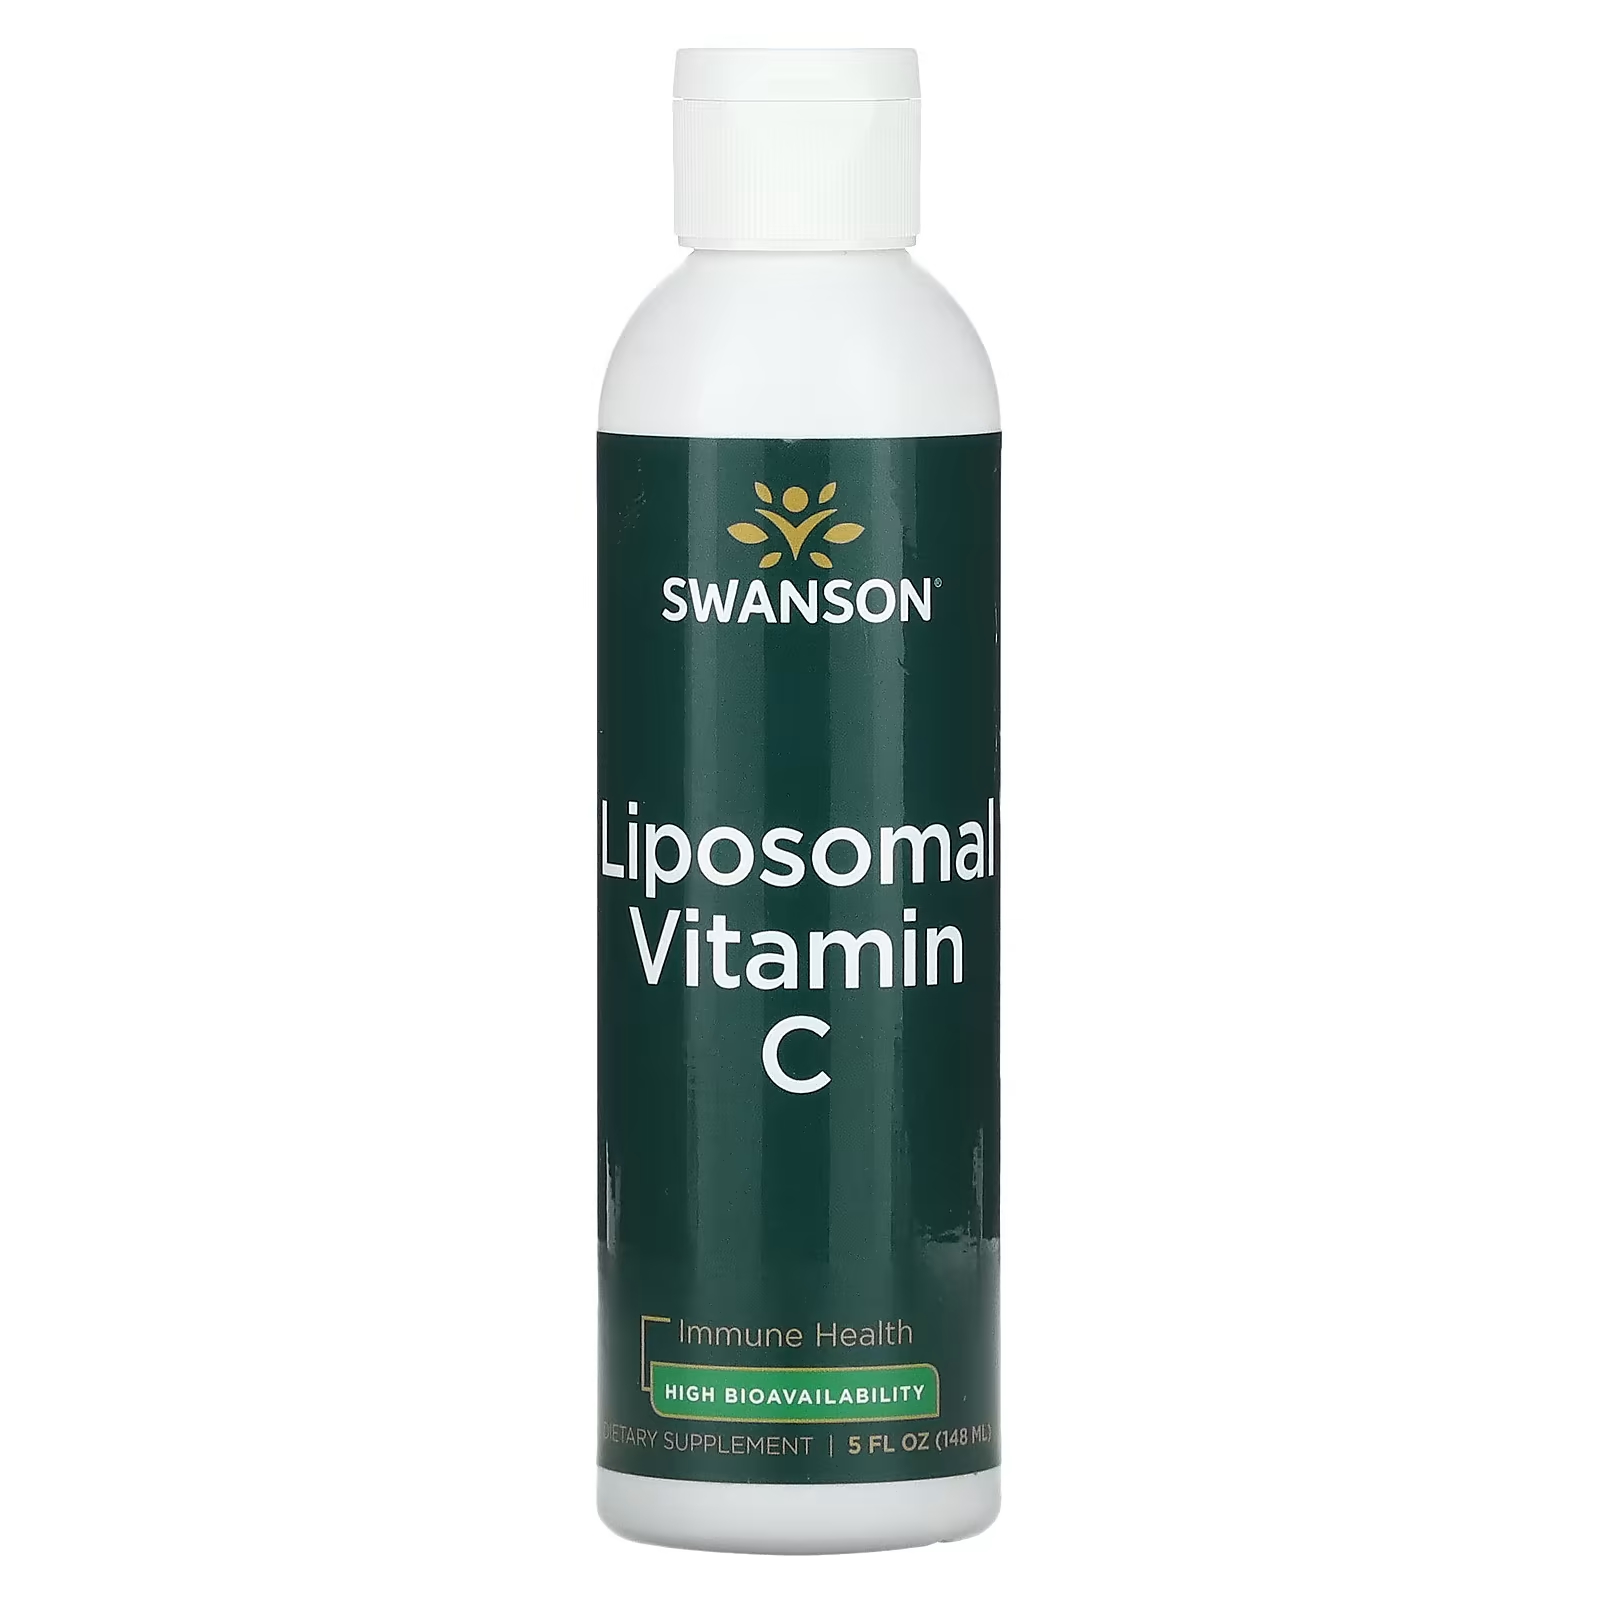 Swanson Липосомальный витамин С, 5 жидких унций (148 мл) swanson липосомальный витамин c 148 мл 5 жидк унций